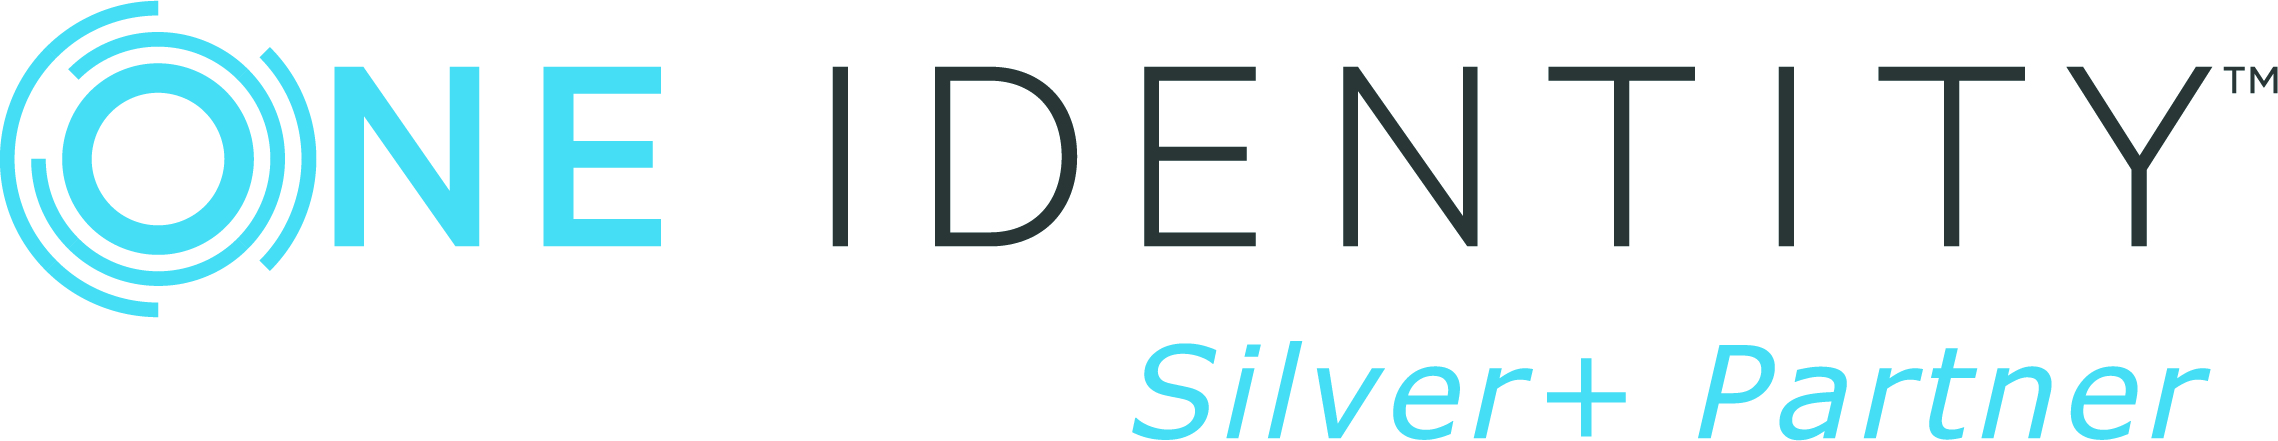 OneIdentity logo SilverPlus Partner